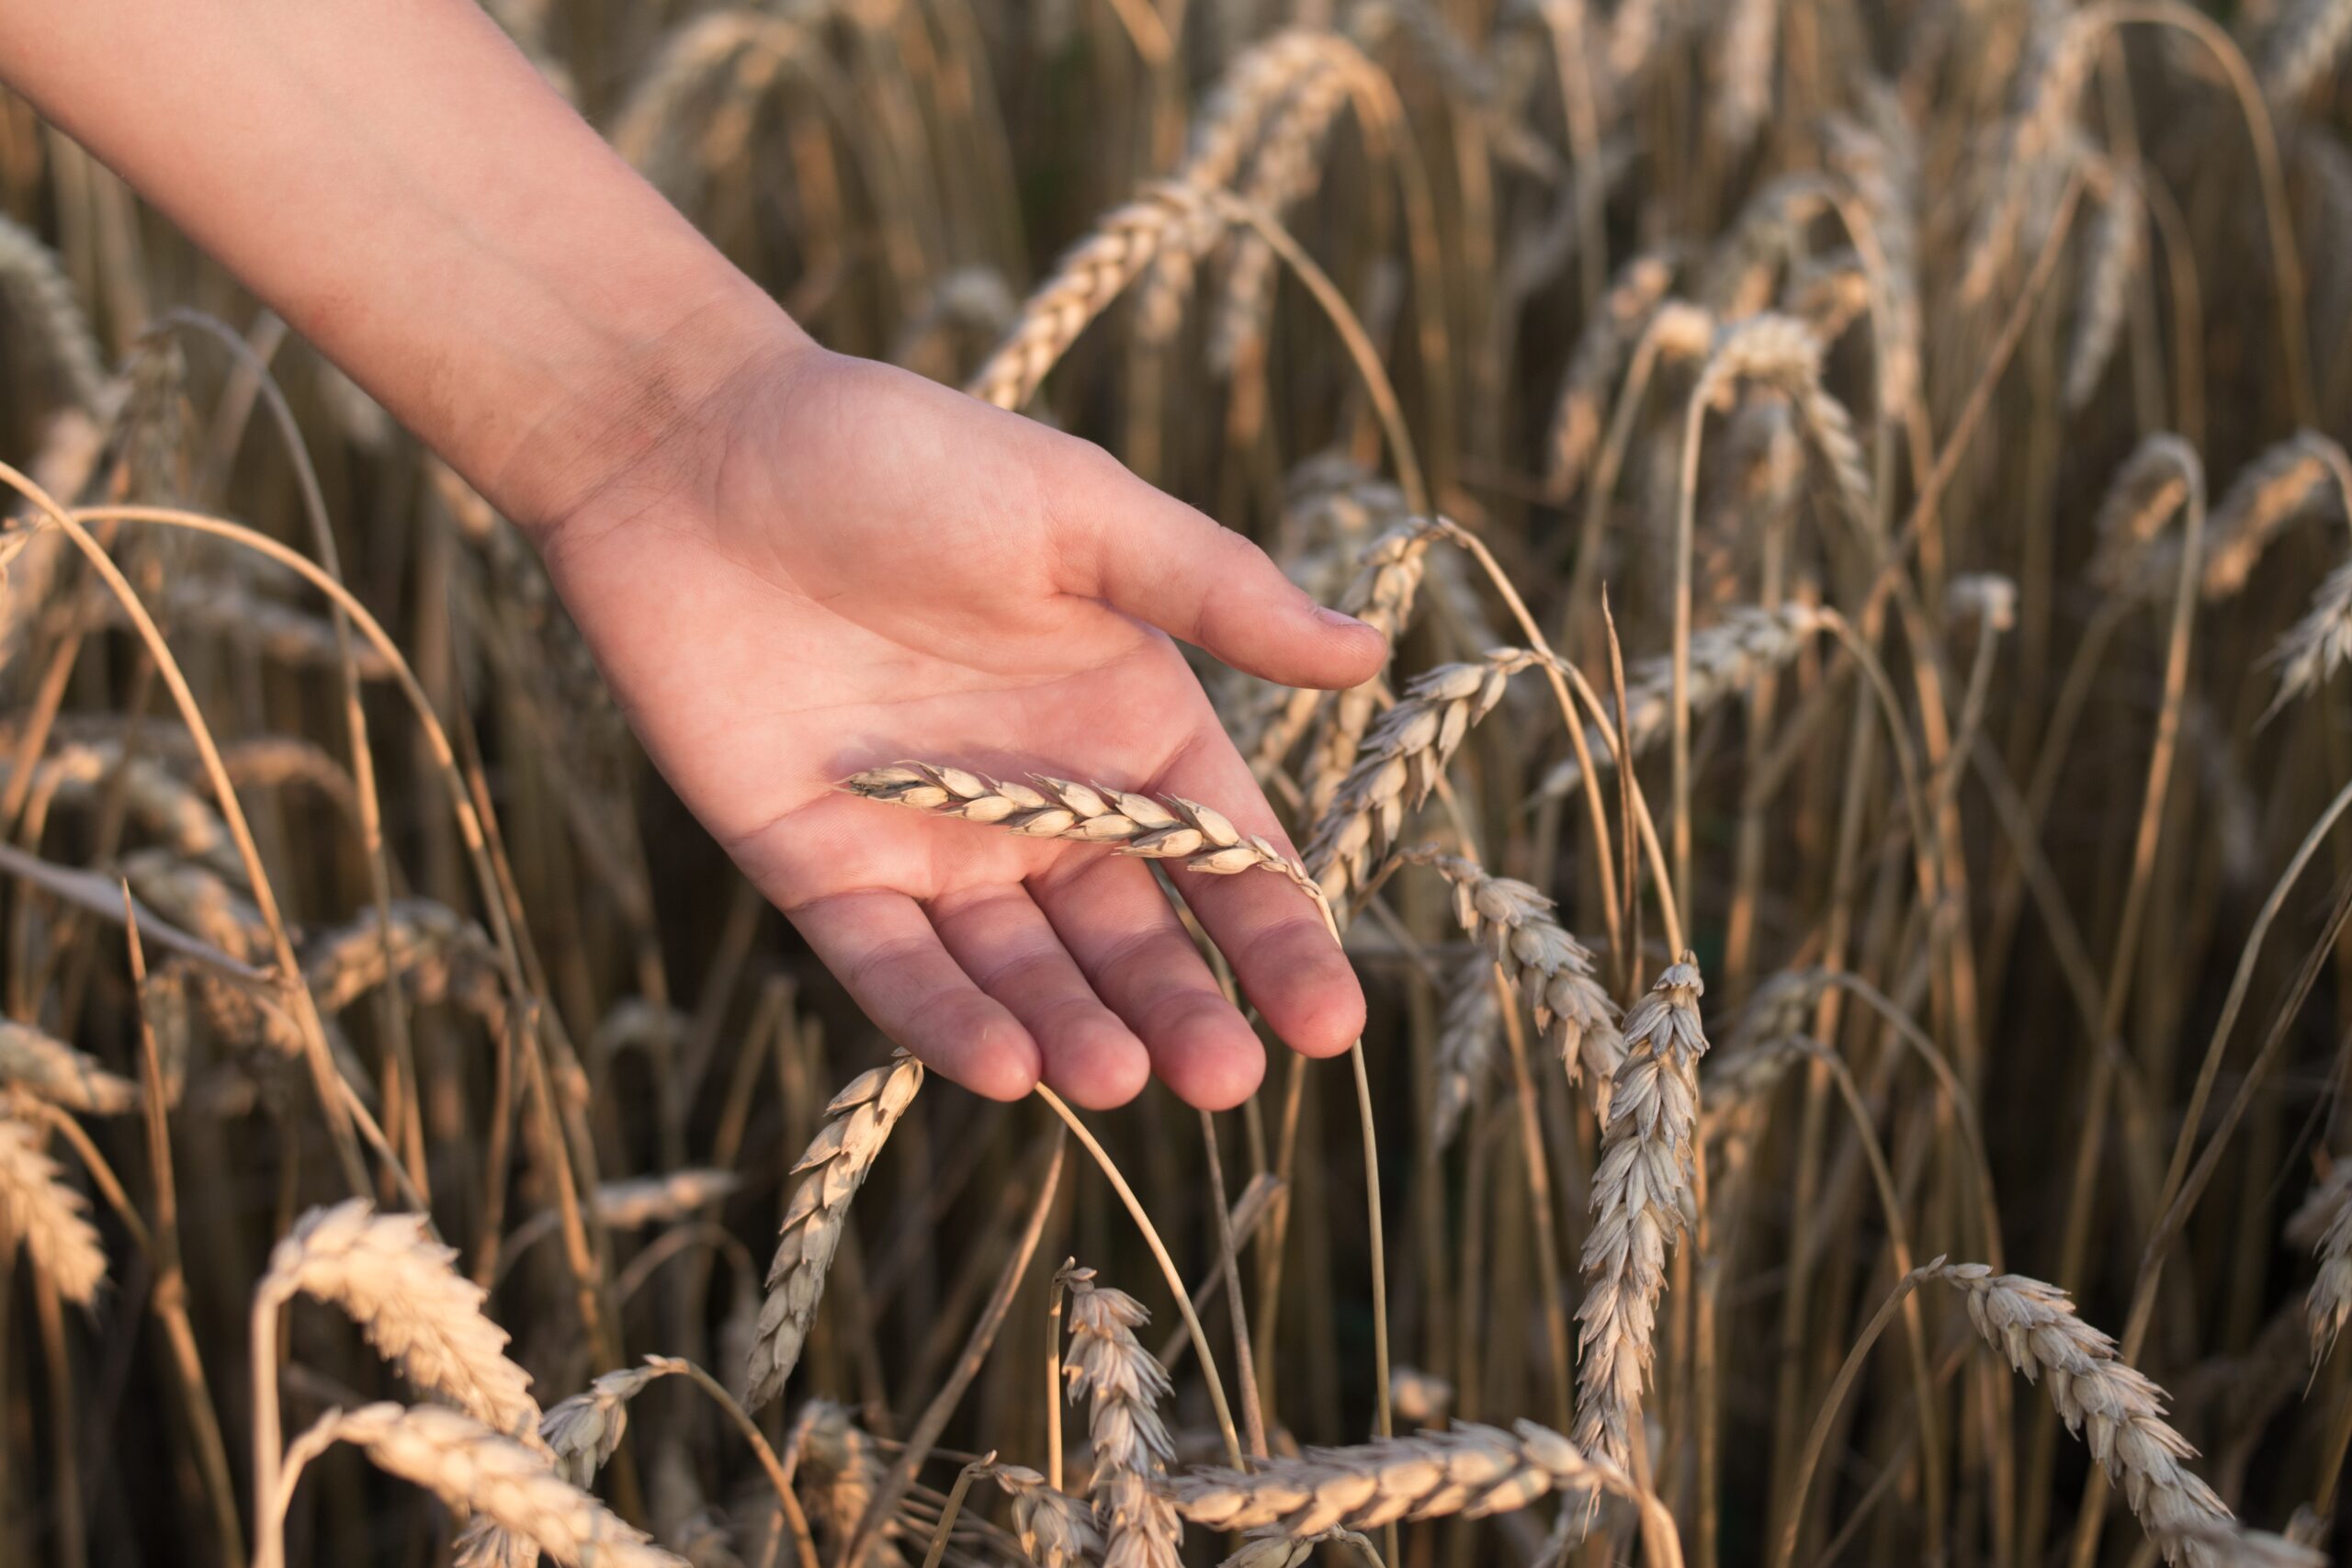 A hand touching wheat